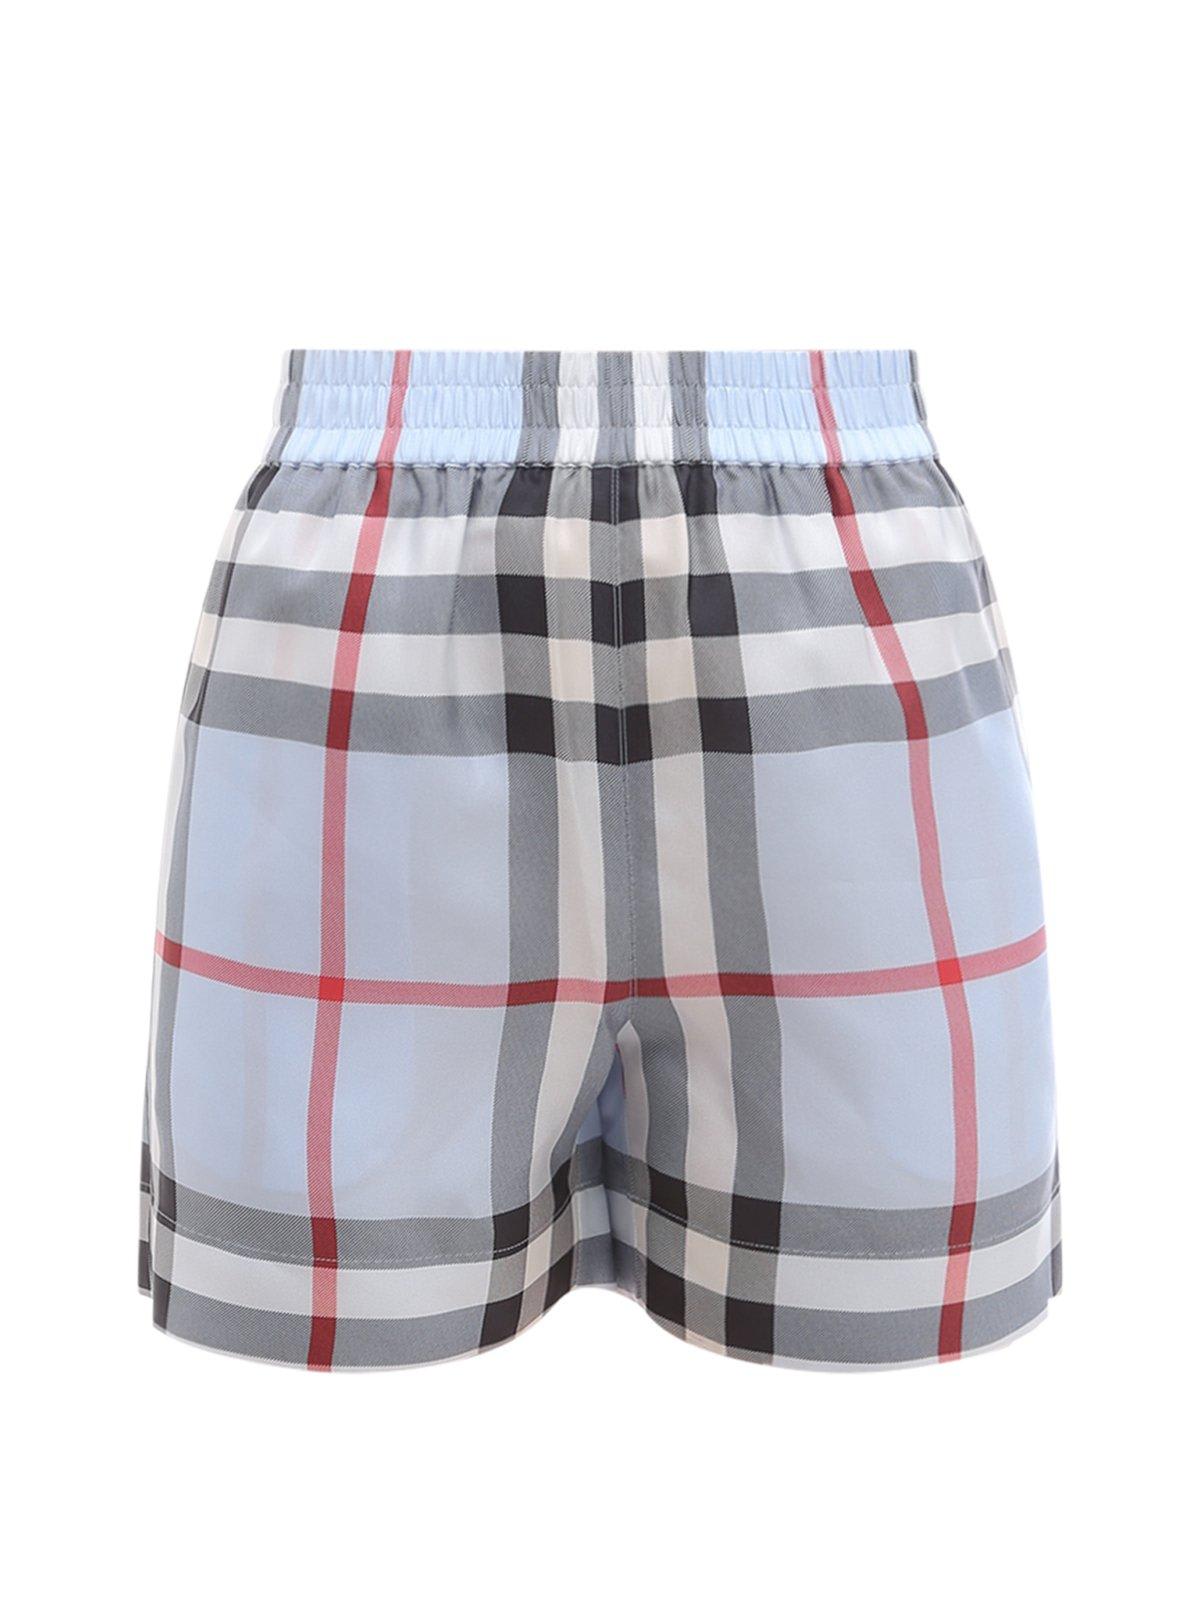 Check Patterned Bermuda Shorts